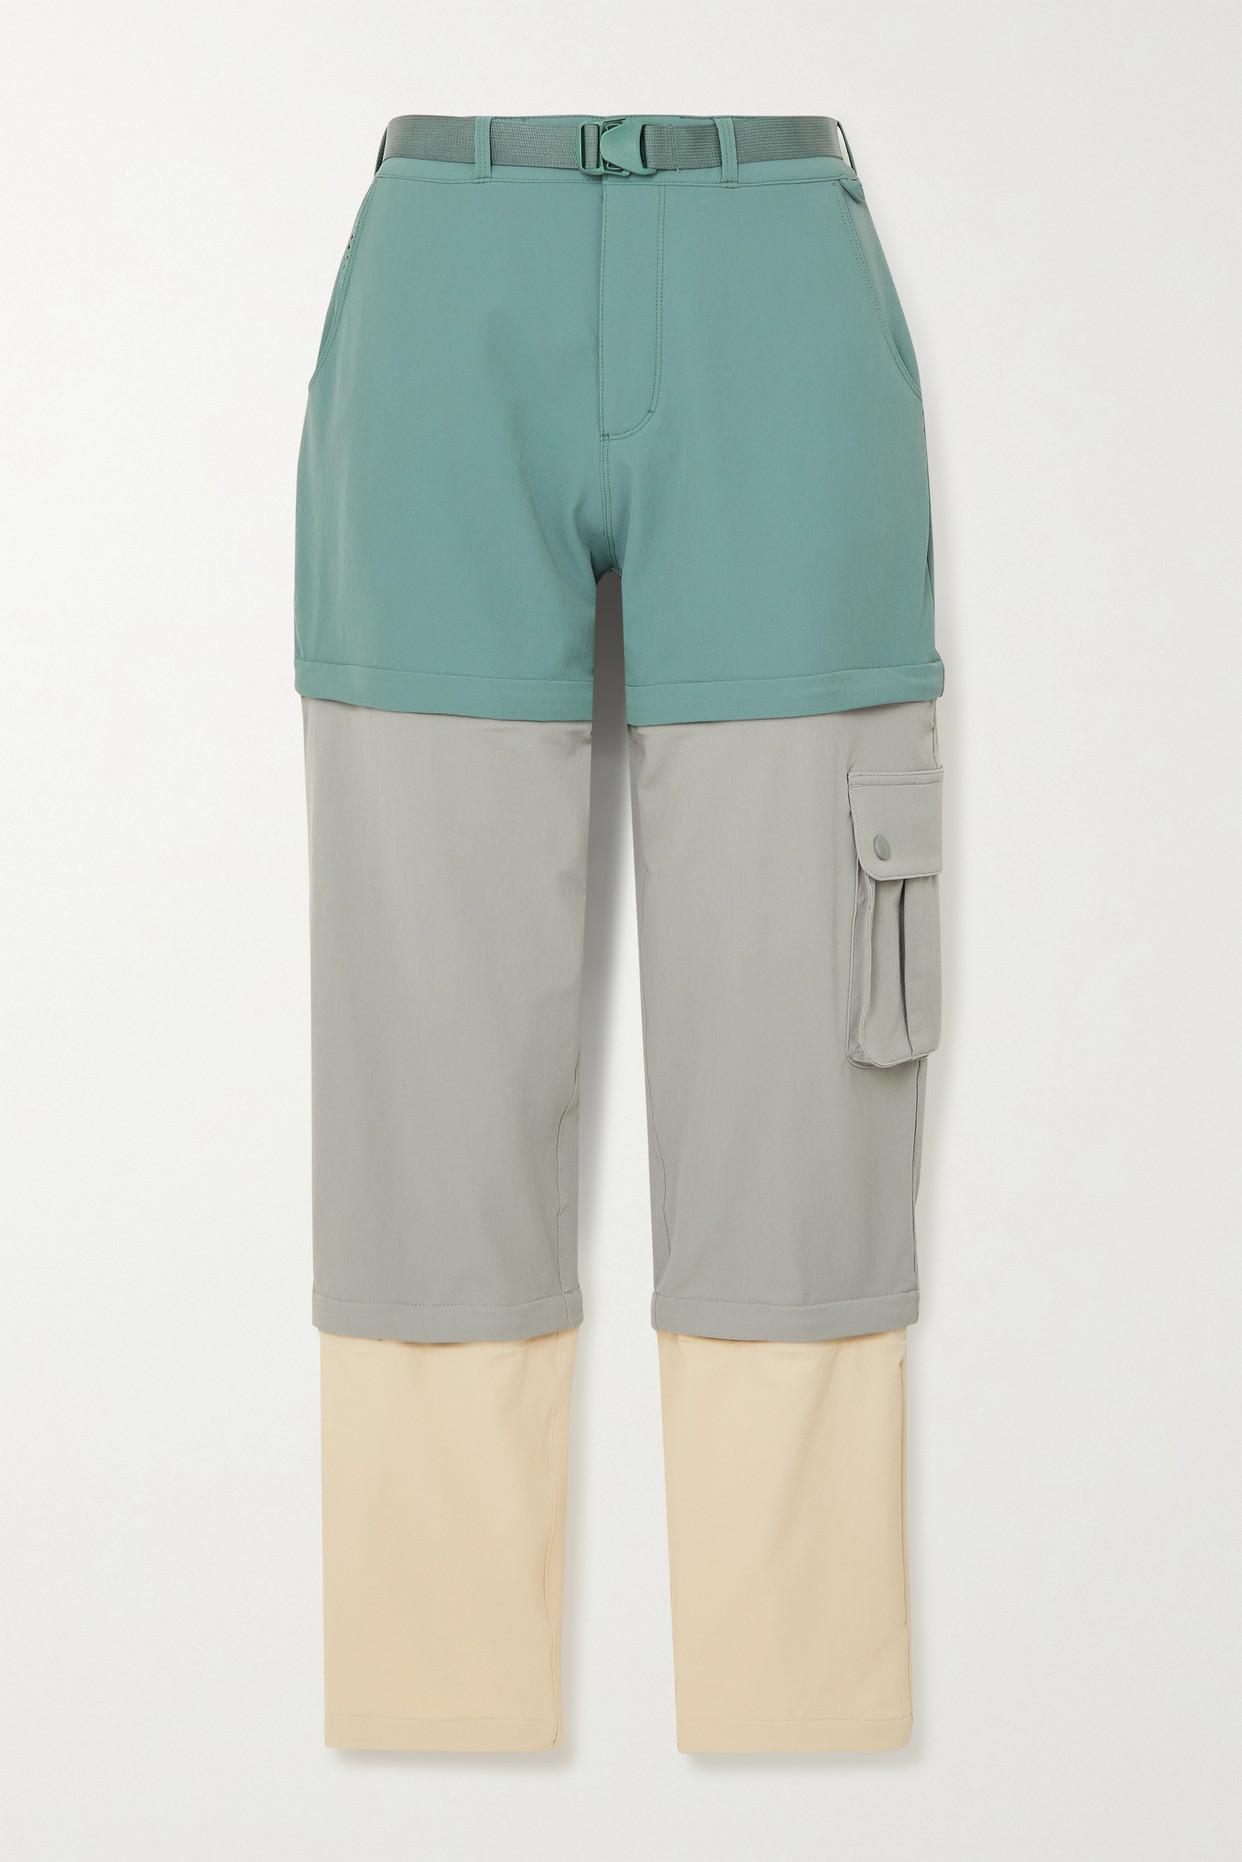 Outdoor Voices Zip-off Convertible Belted Rectrek Pants in Green